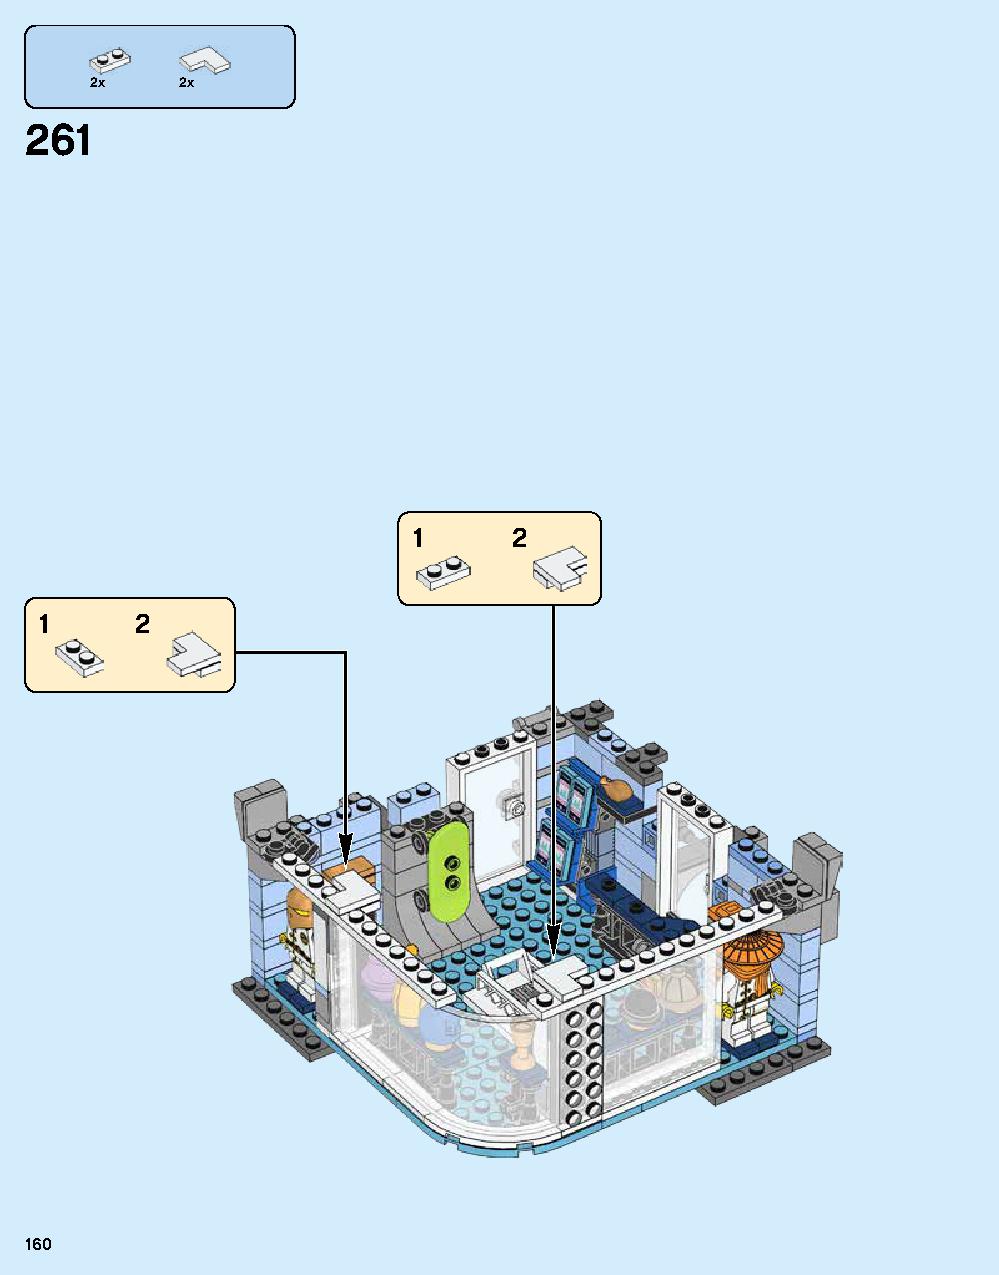 ニンジャゴー シティ 70620 レゴの商品情報 レゴの説明書・組立方法 160 page